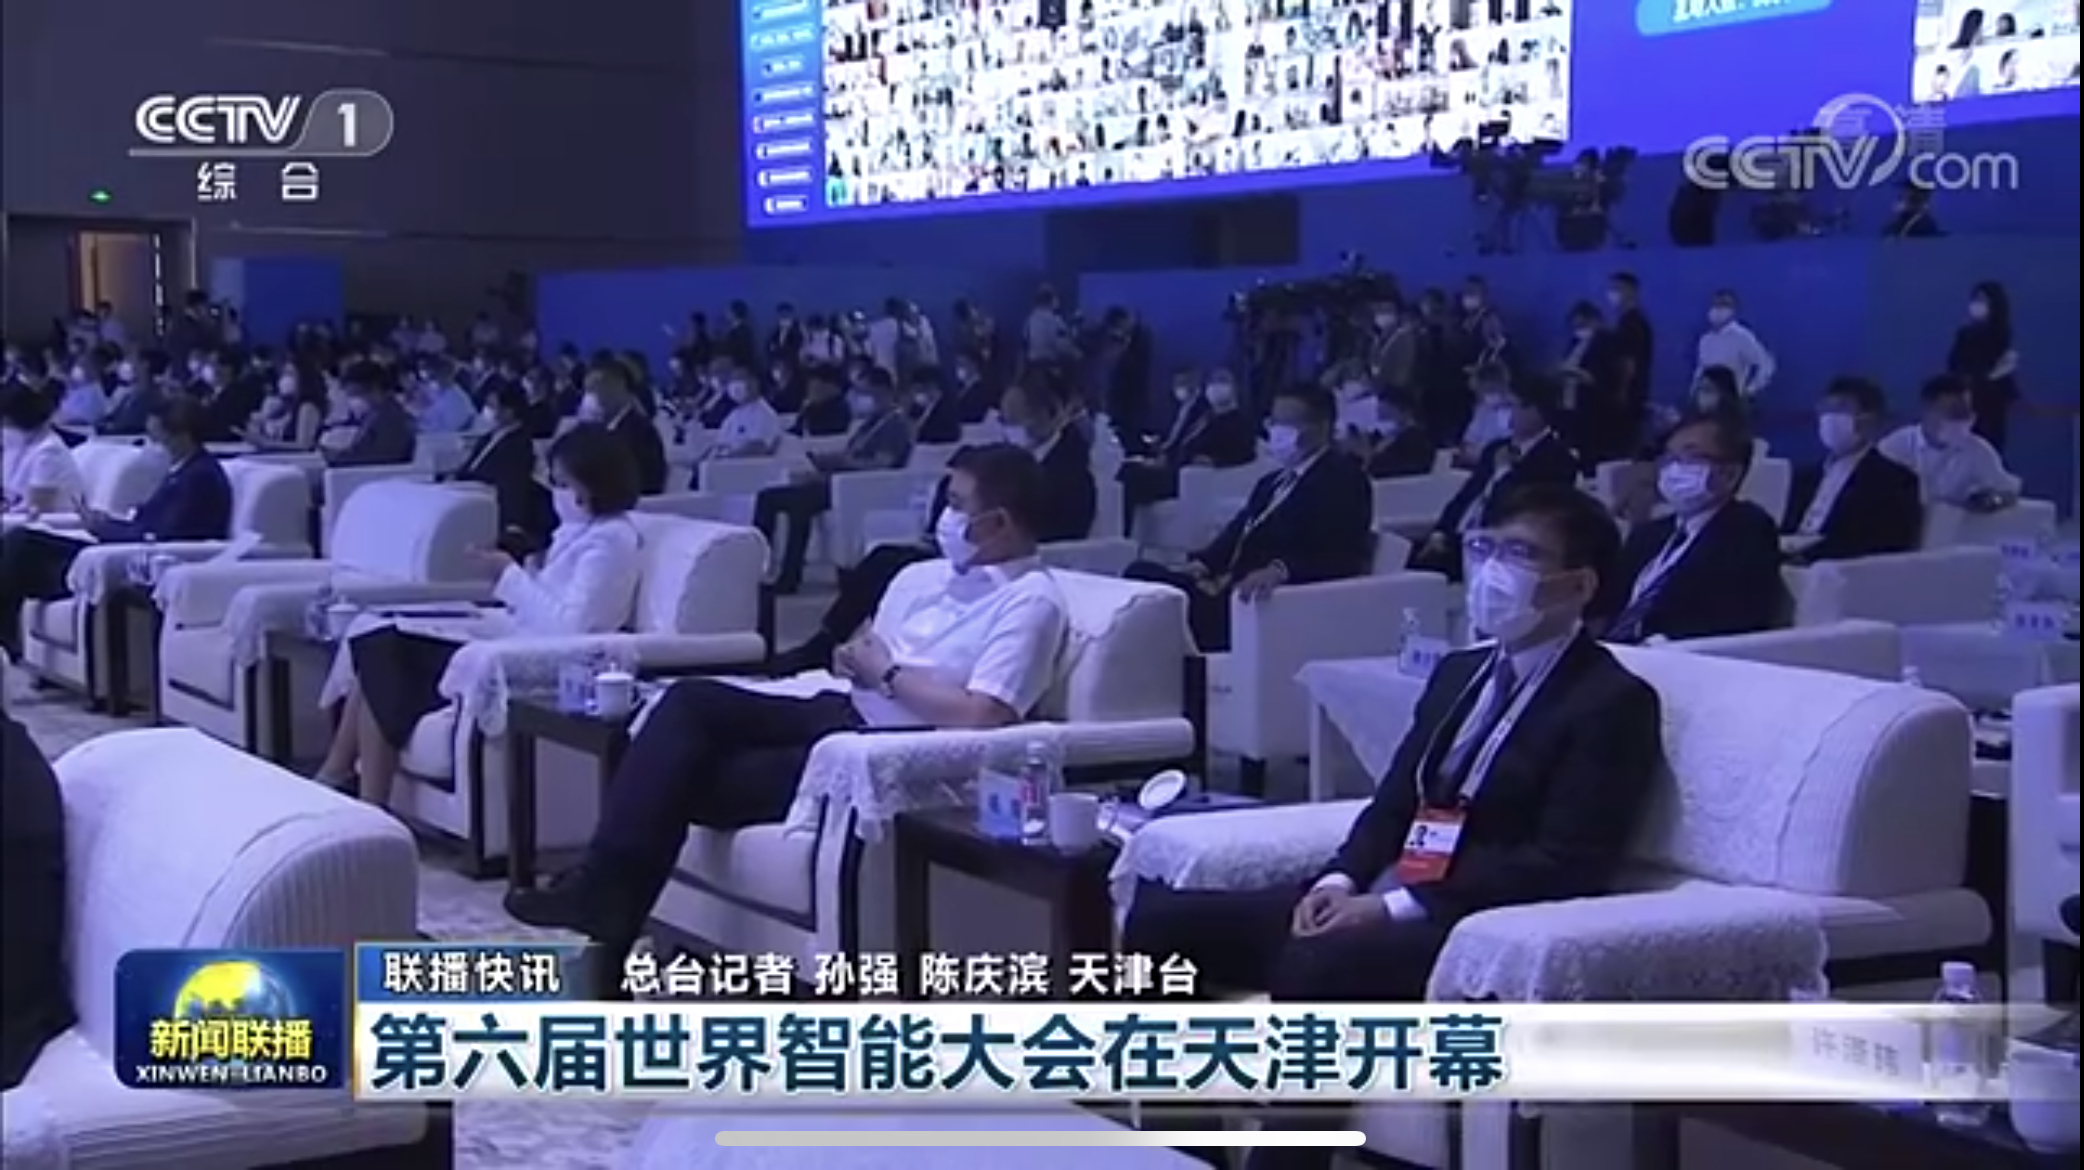 云账户作为首席战略合作伙伴参加第六届世界智能大会